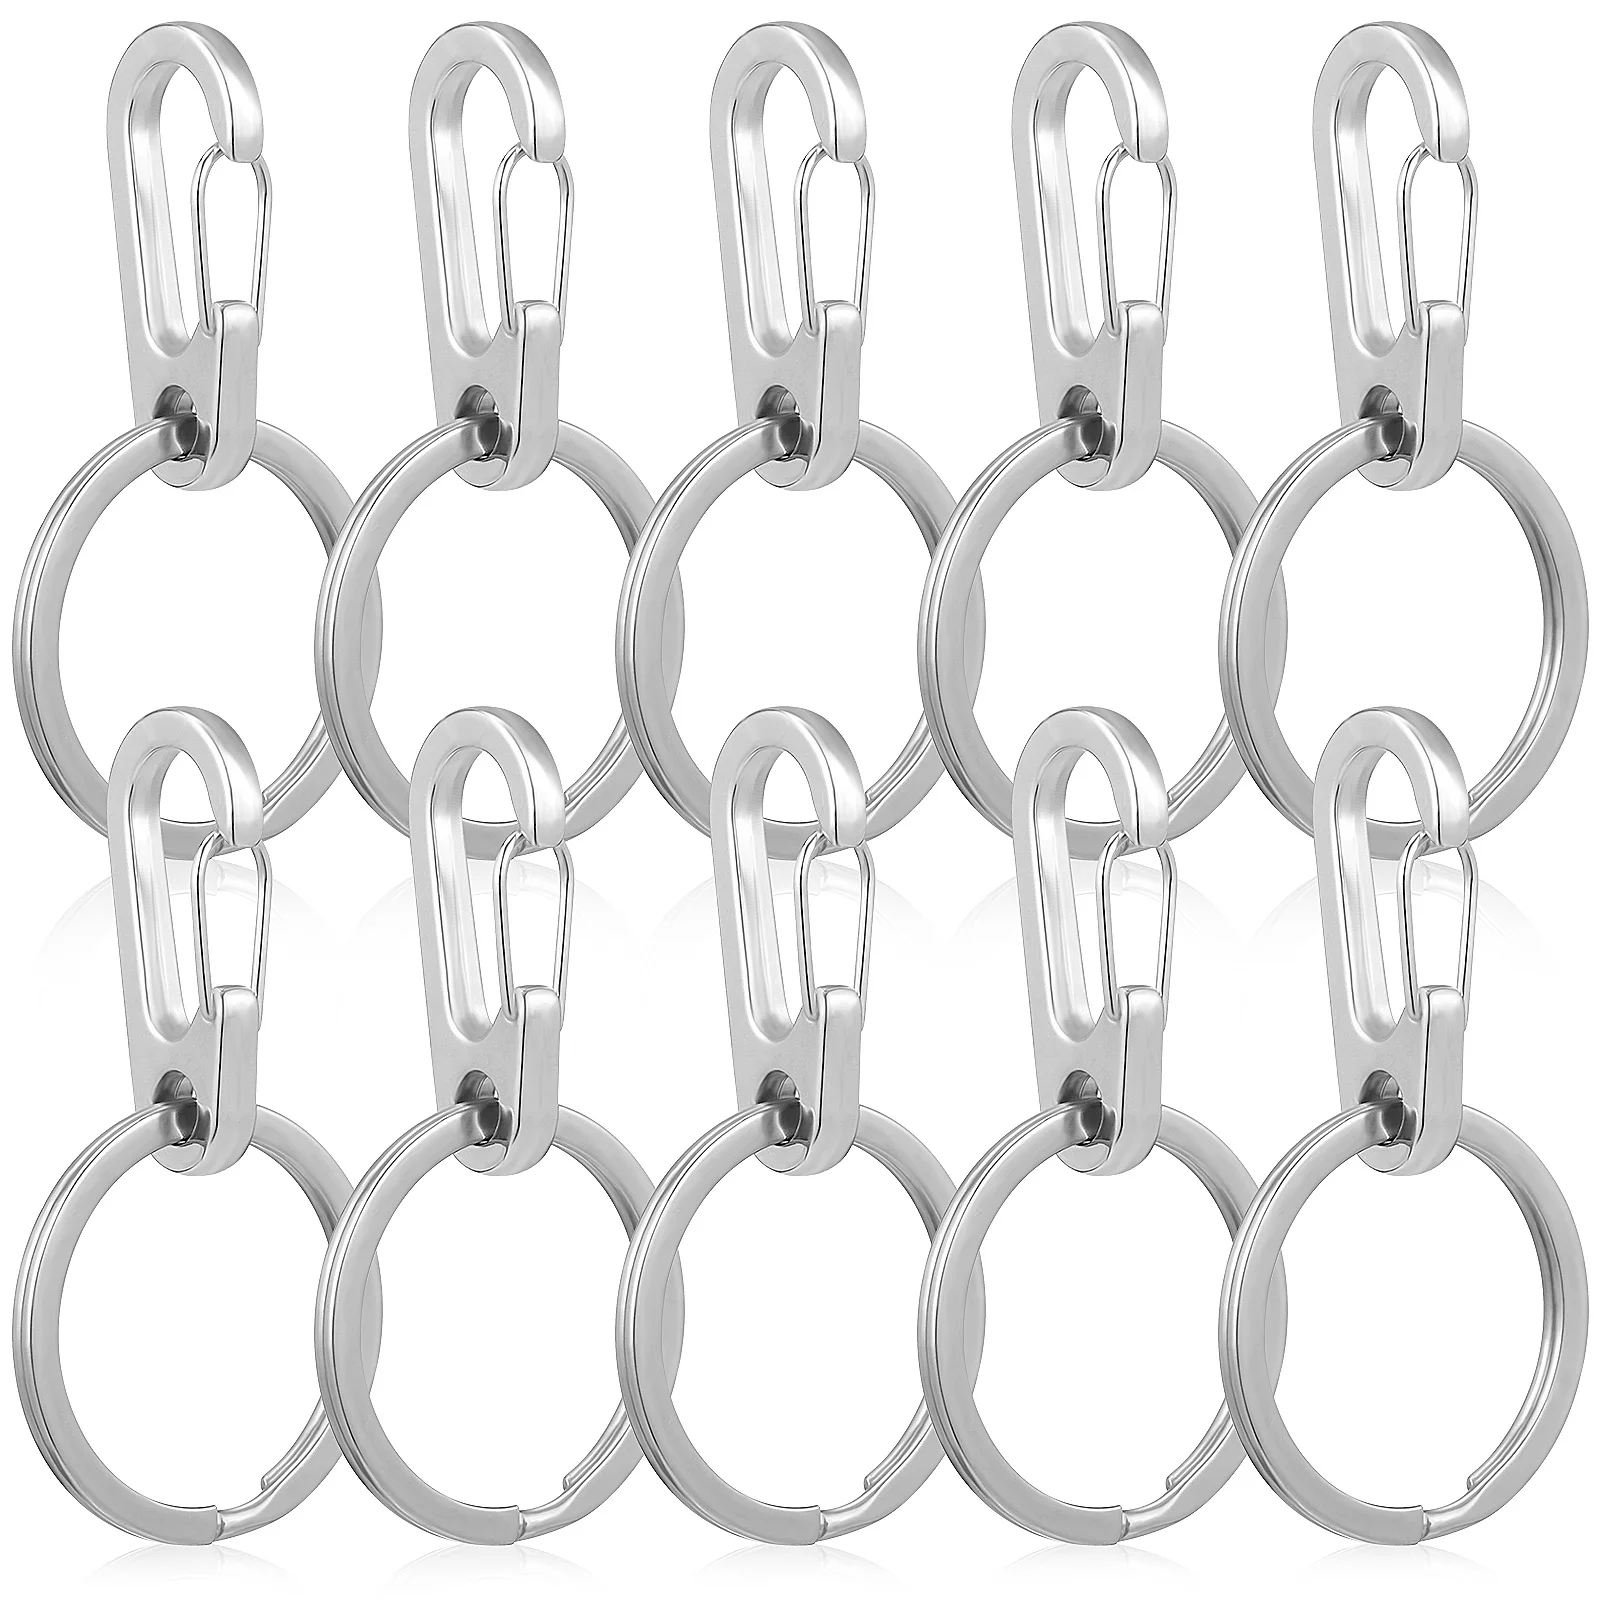 

10 Set Carabiner Spring Snap Clip Hooks with Flat Keyrings for Backpack Bottle Hooks Keychains DIY Crafts